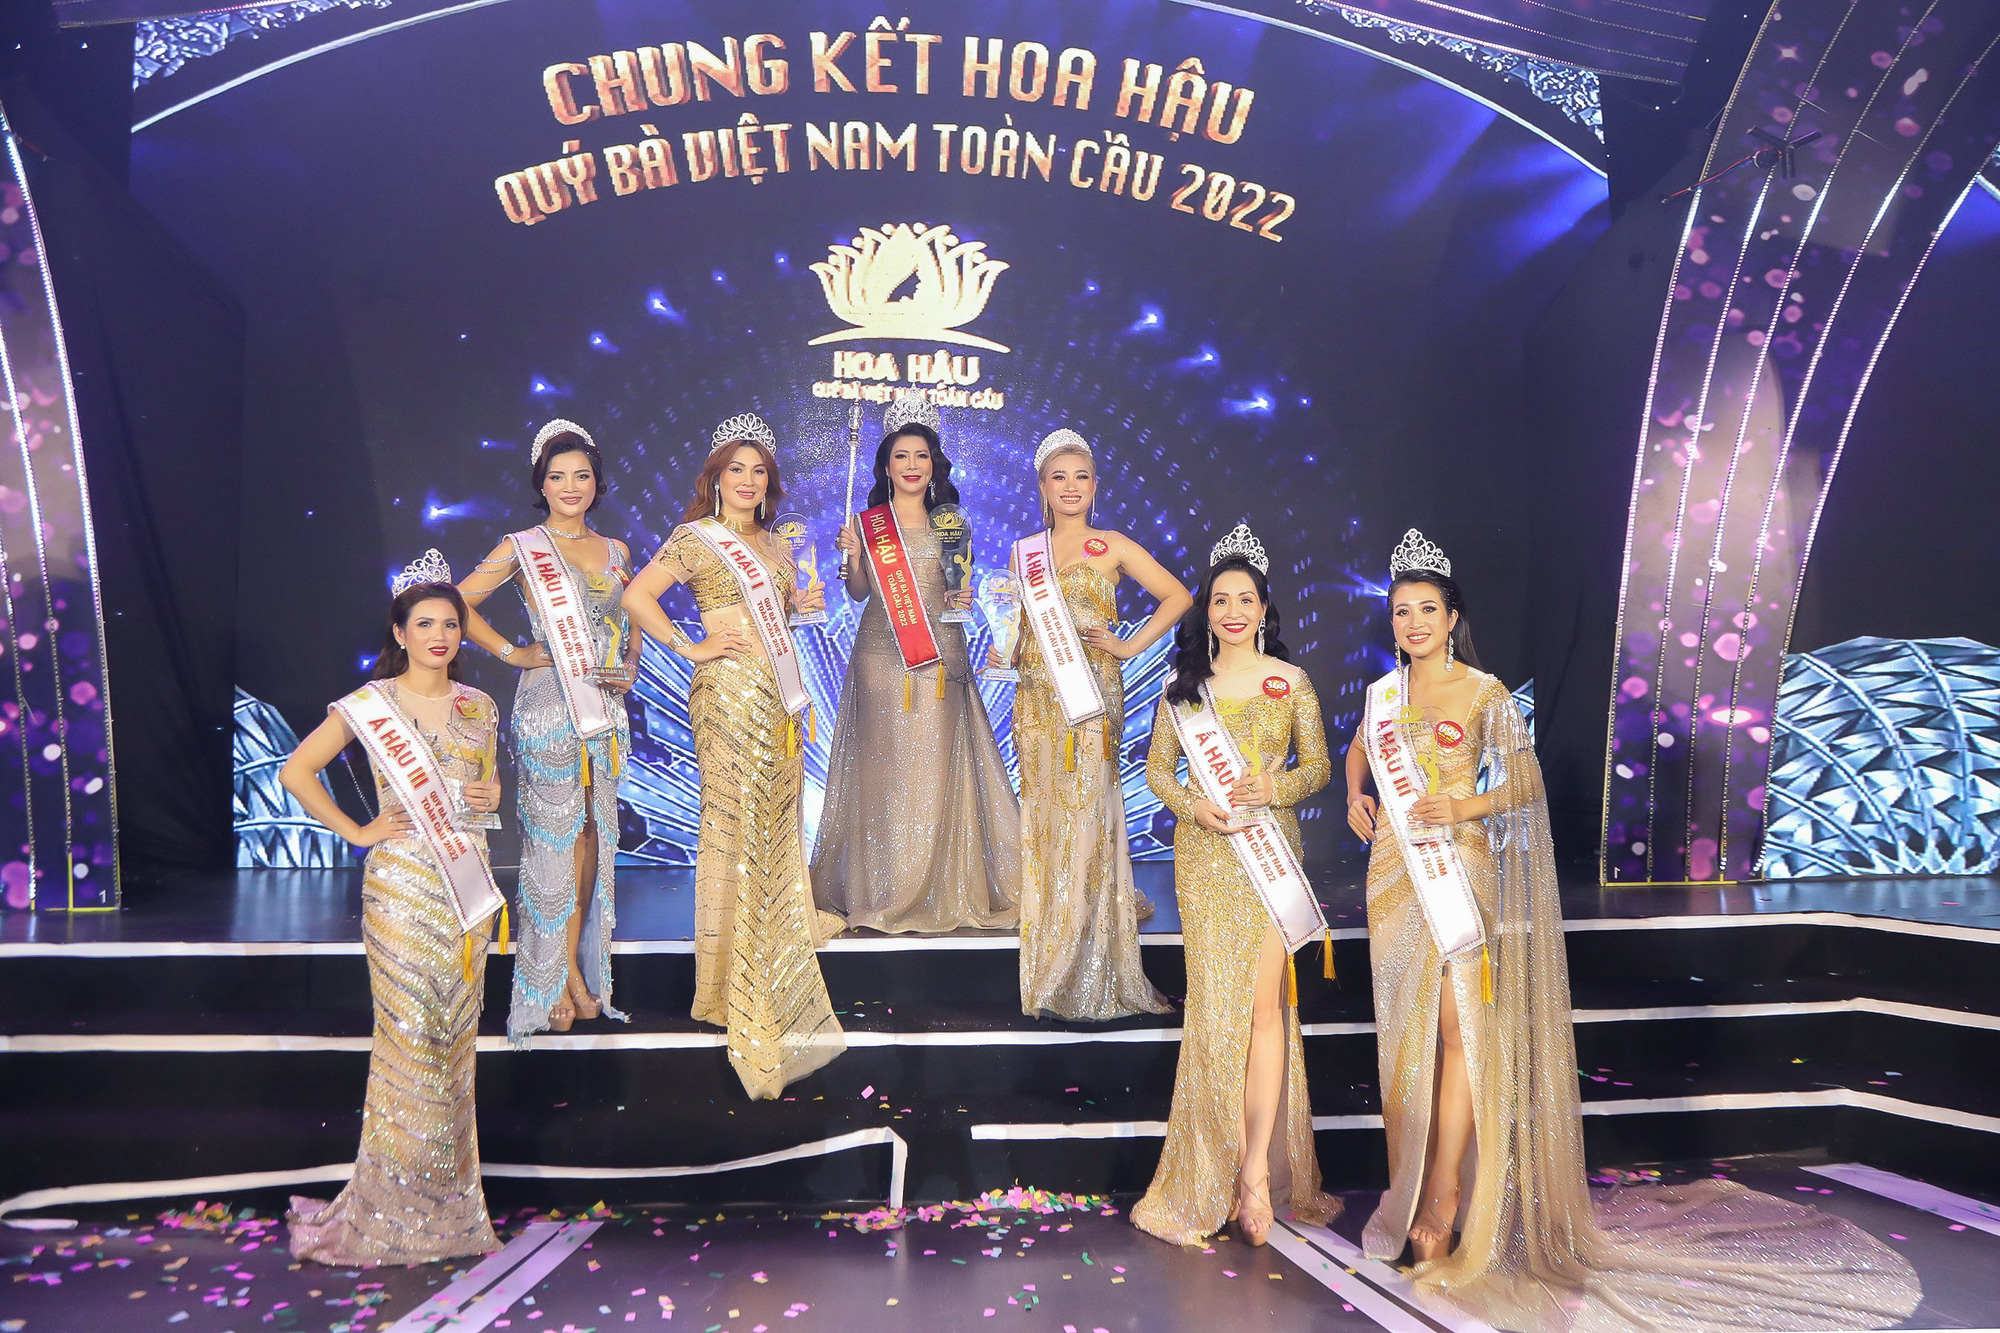 Lộ diện Hoa hậu quý bà Việt Nam toàn cầu 2022 - Ảnh 1.